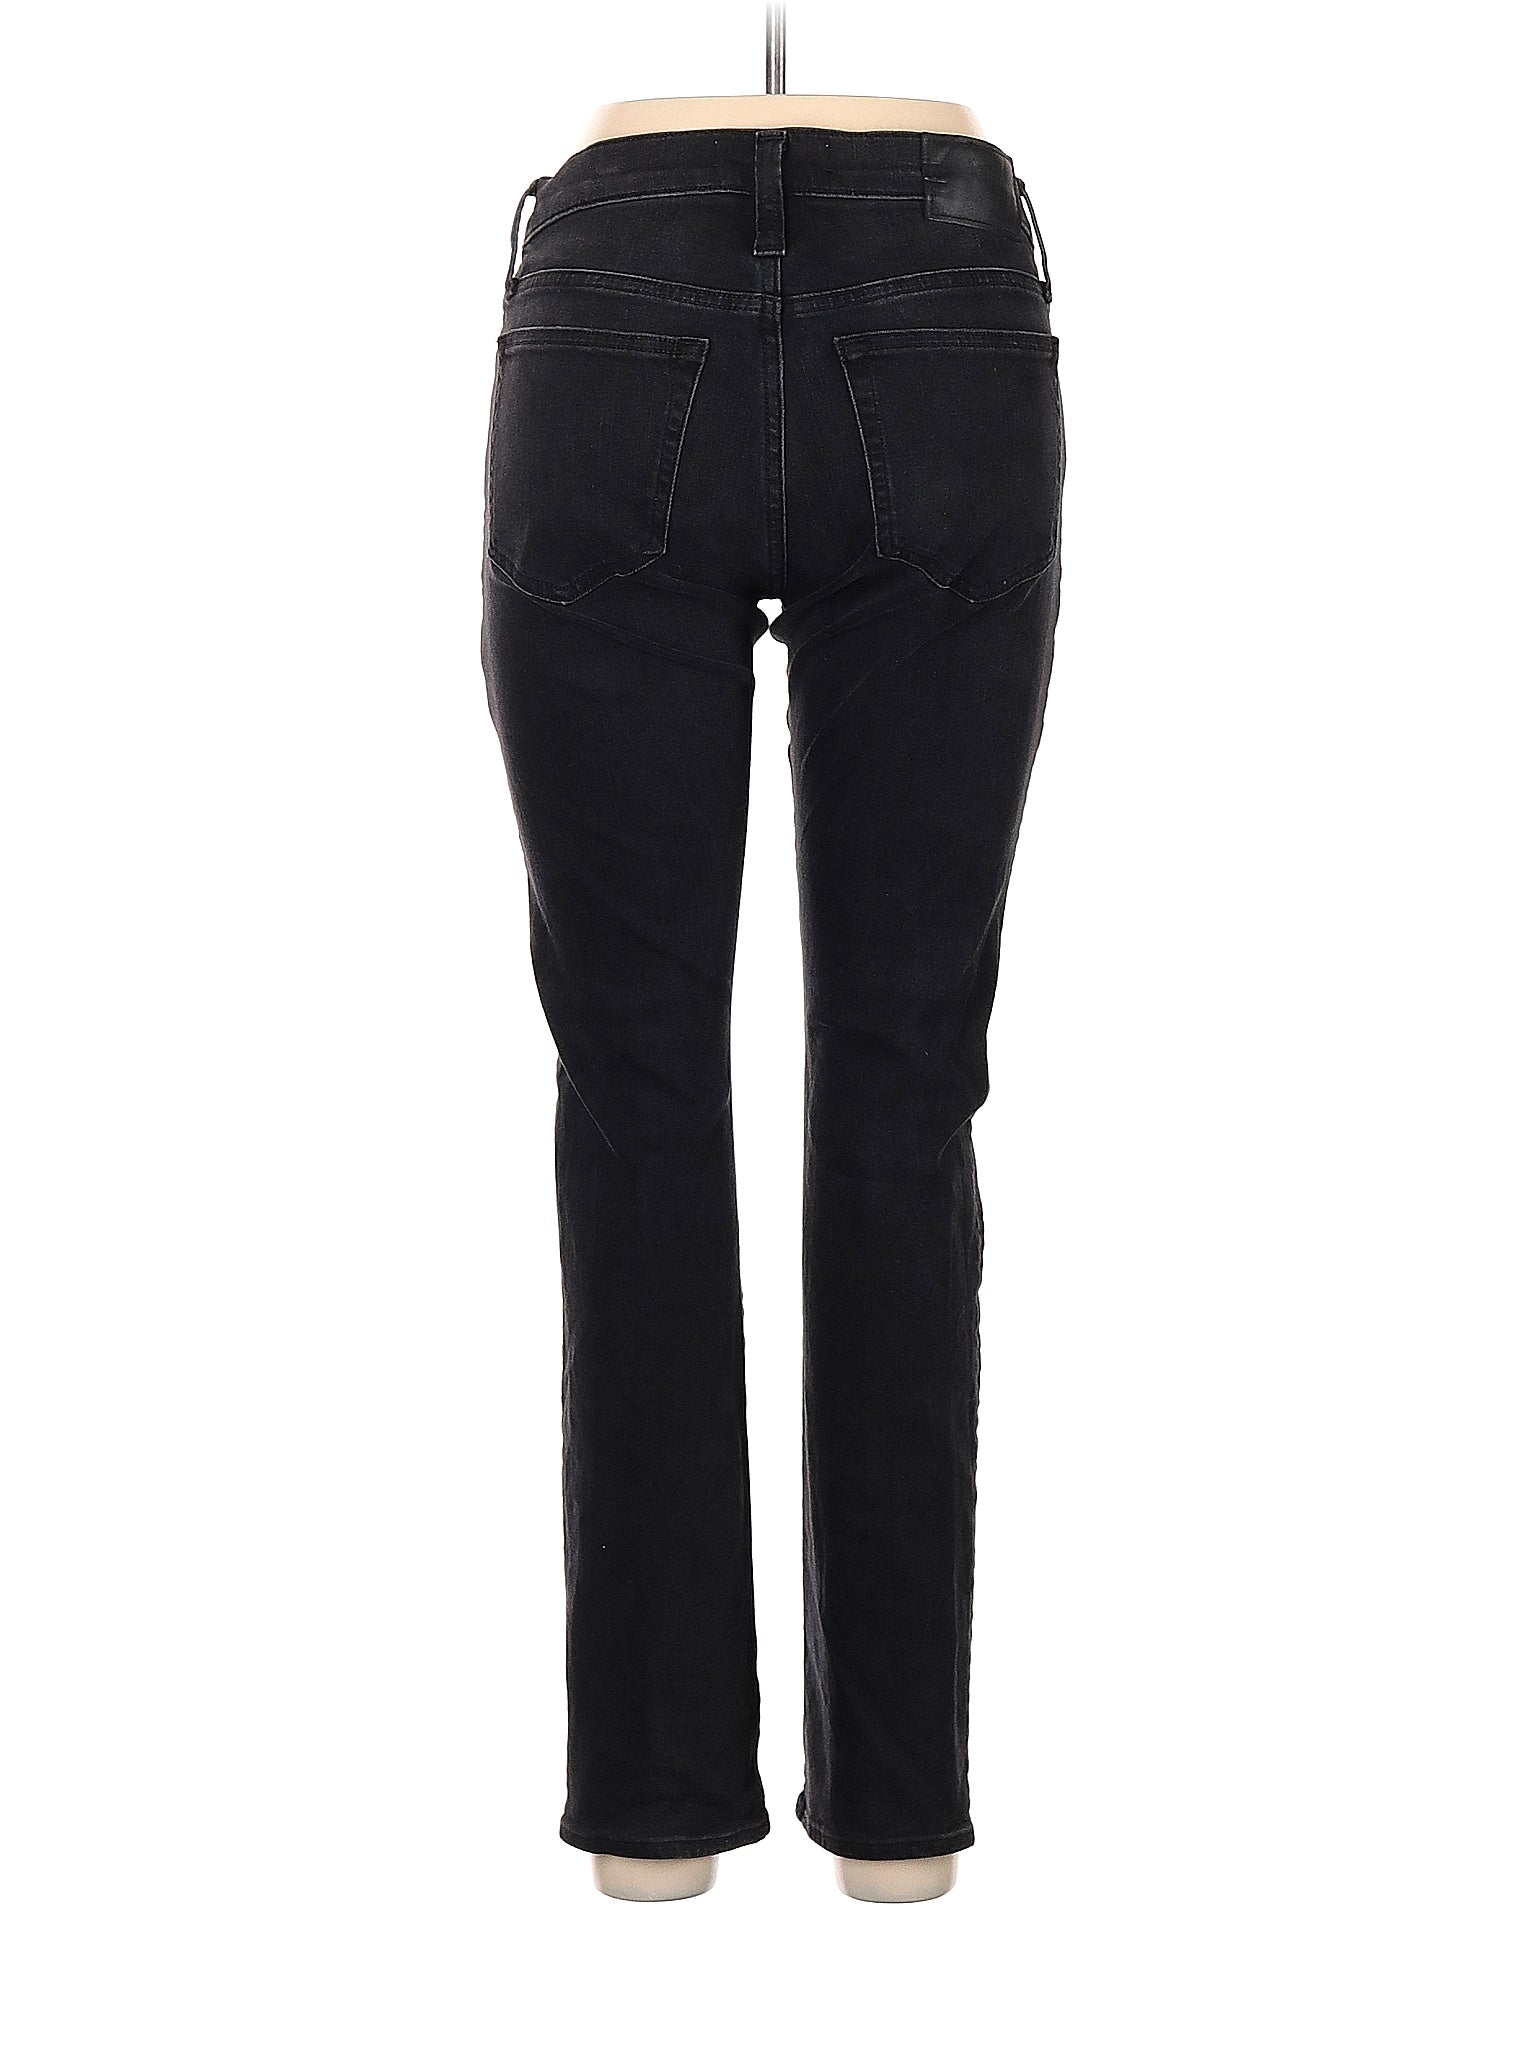 Skinny Jeans in Dark Wash size - 8 P